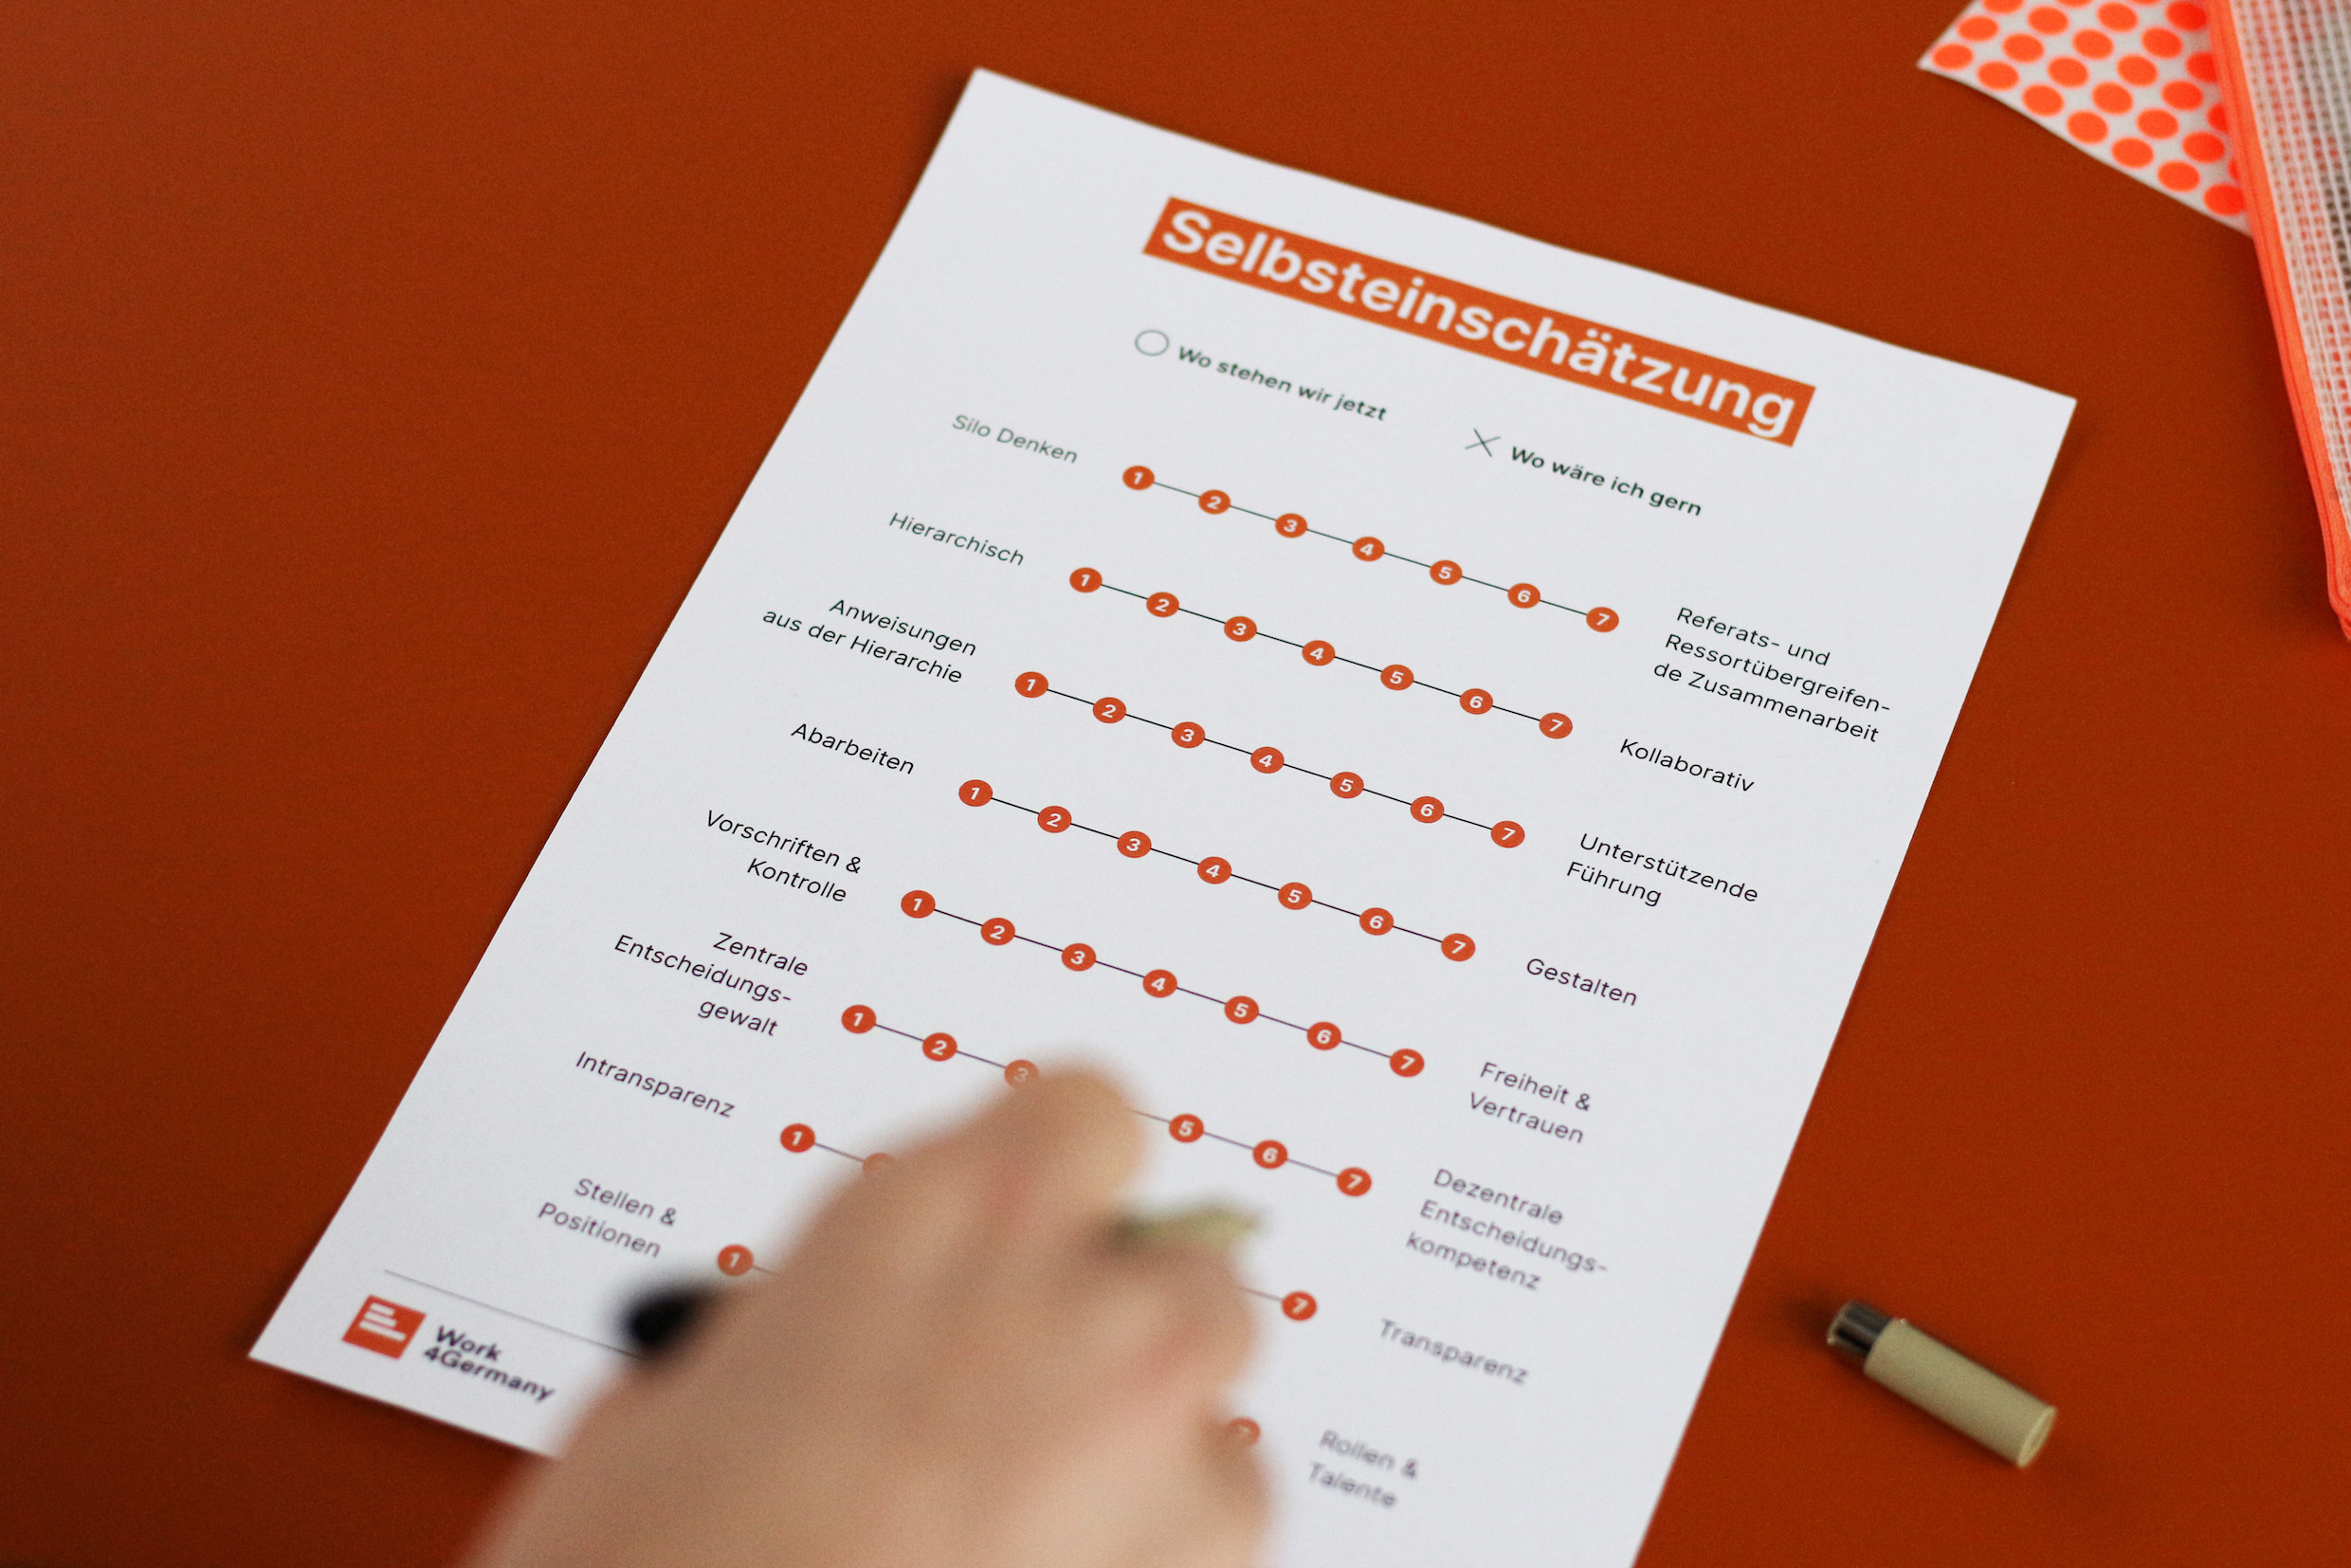 Ein Blatt auf einem orangen Tisch, das eine Person anfängt, zu beschreiben – es ist überschrieben mit ,Selbsteinschätzung‘ und zeigt 8 verschiedene Skalen mit jeweils 8 Schritten untereinander